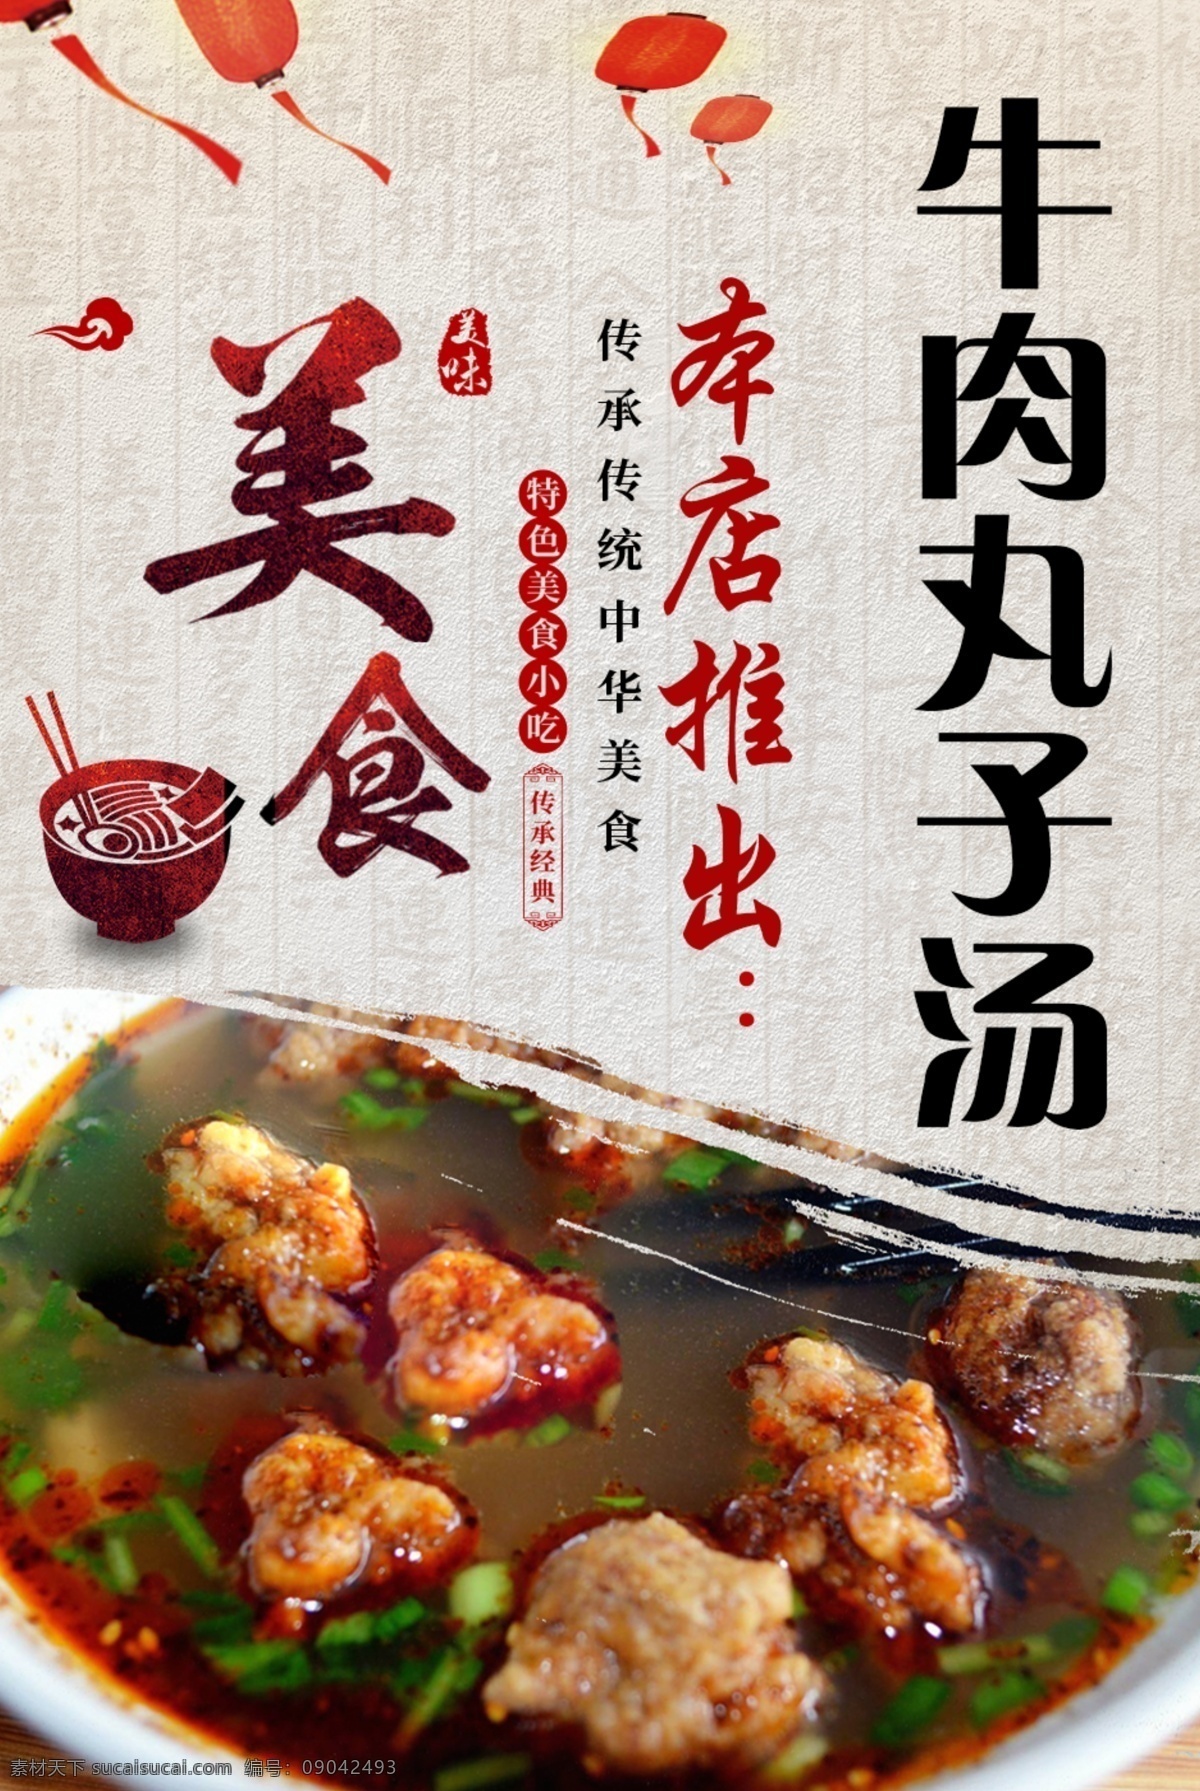 菜单 美食 丸子 牛肉丸子 汤 中国风 中国红